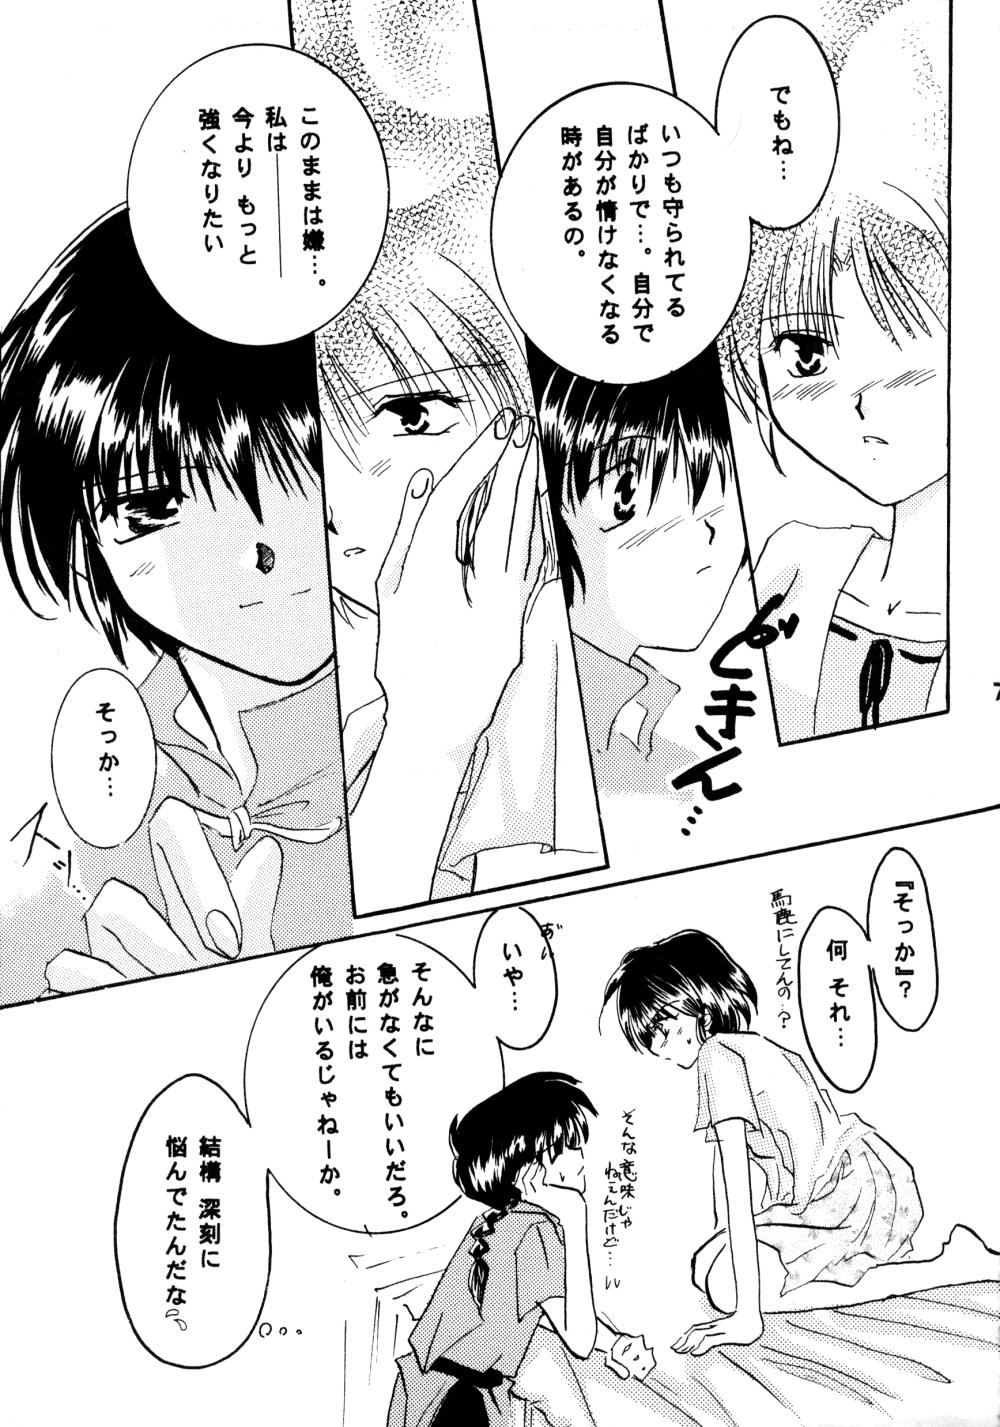 4some Koi no Yume Ai no Uta - Ranma 12 Job - Page 6